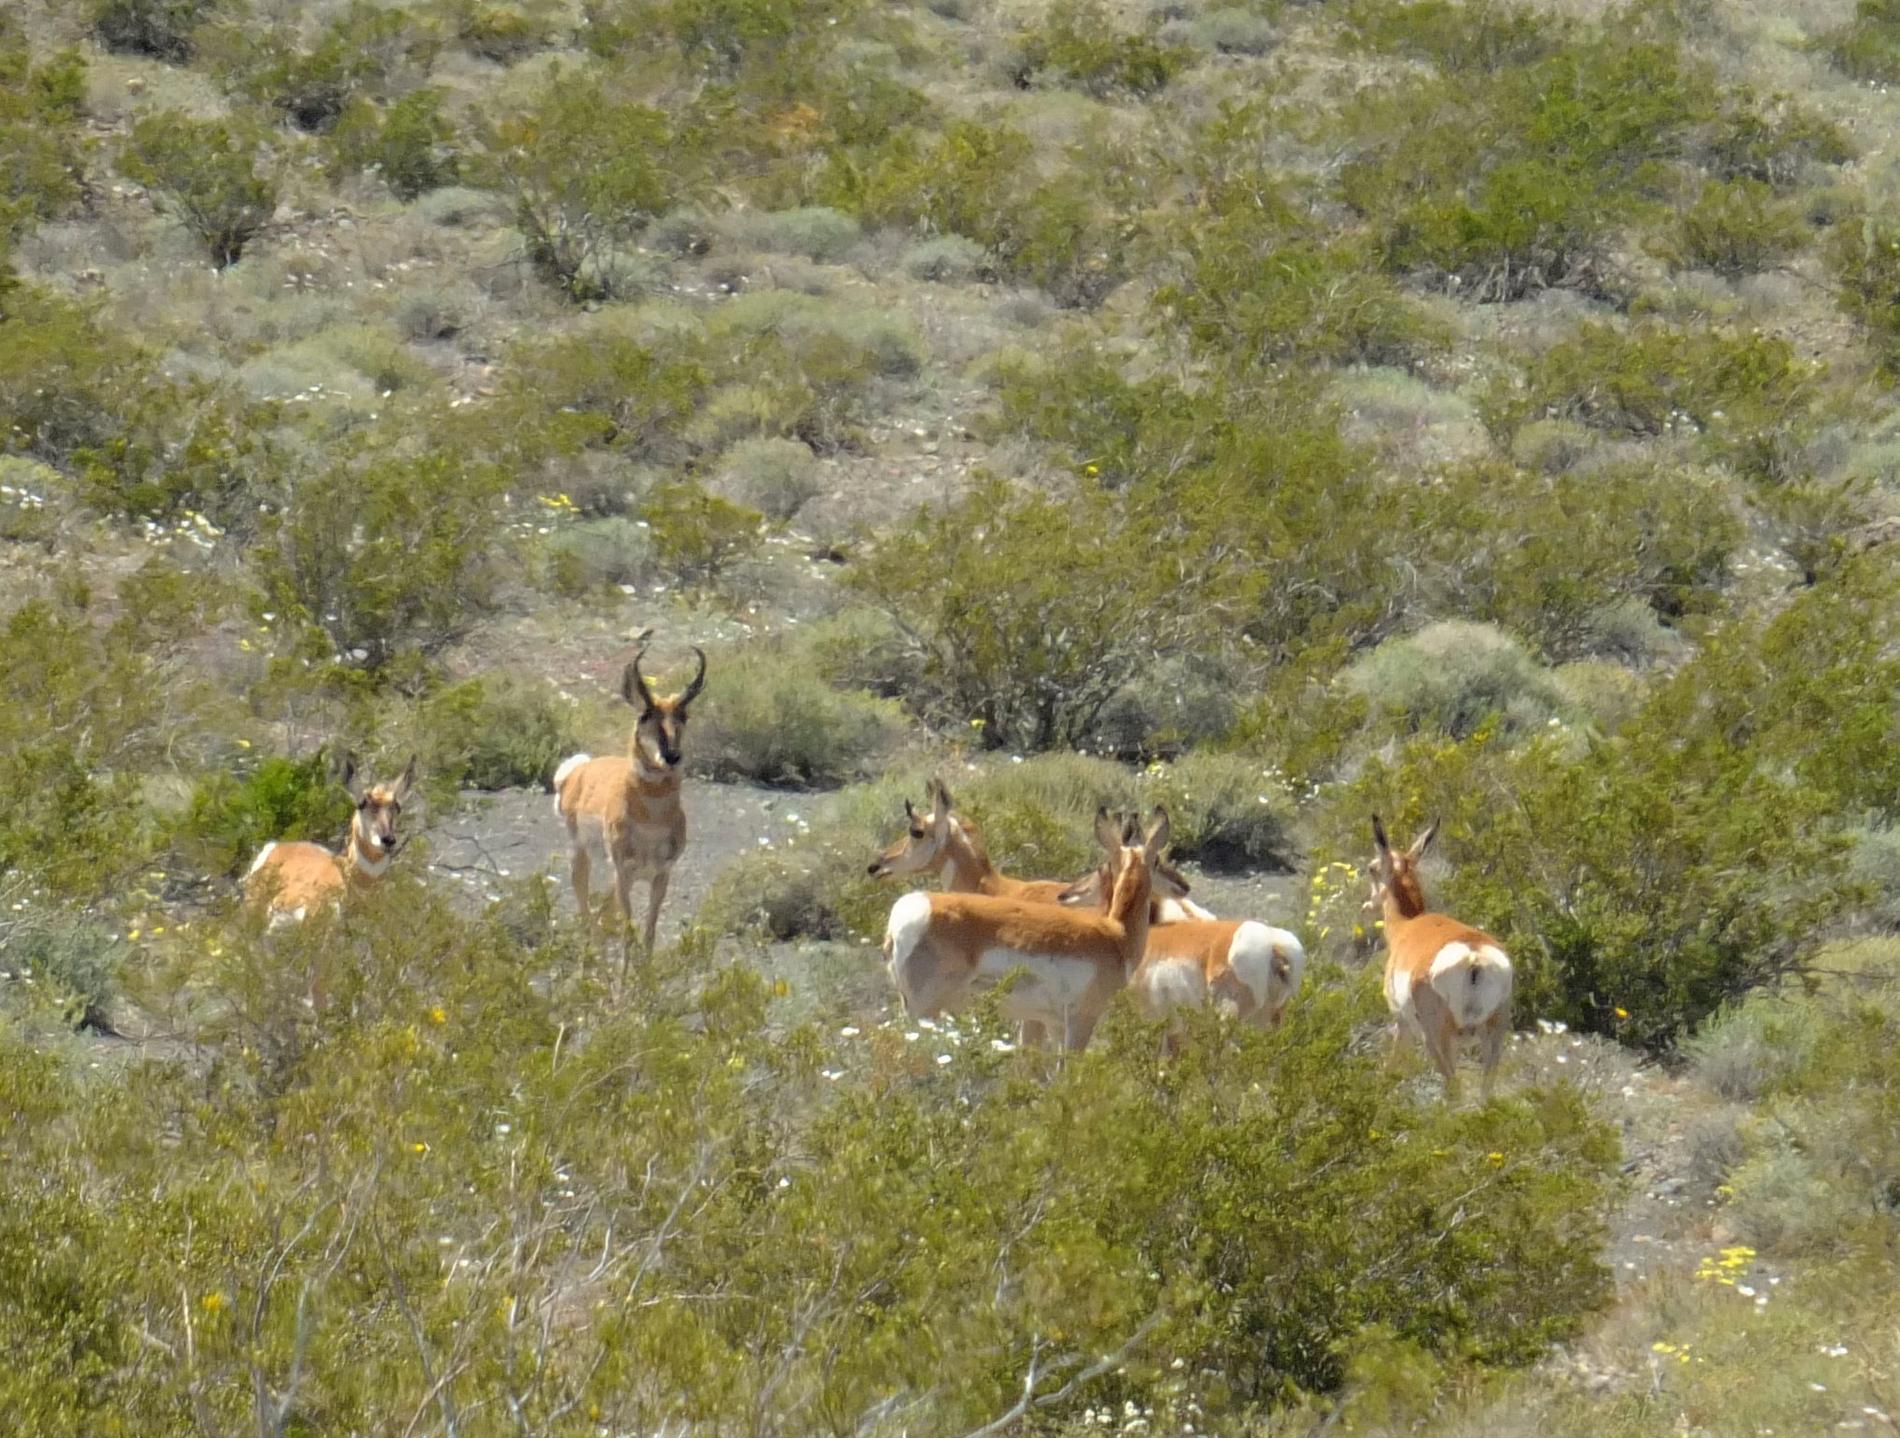 Skygga gaffelantiloper har setts allt oftare i nationalparken Death Valley.